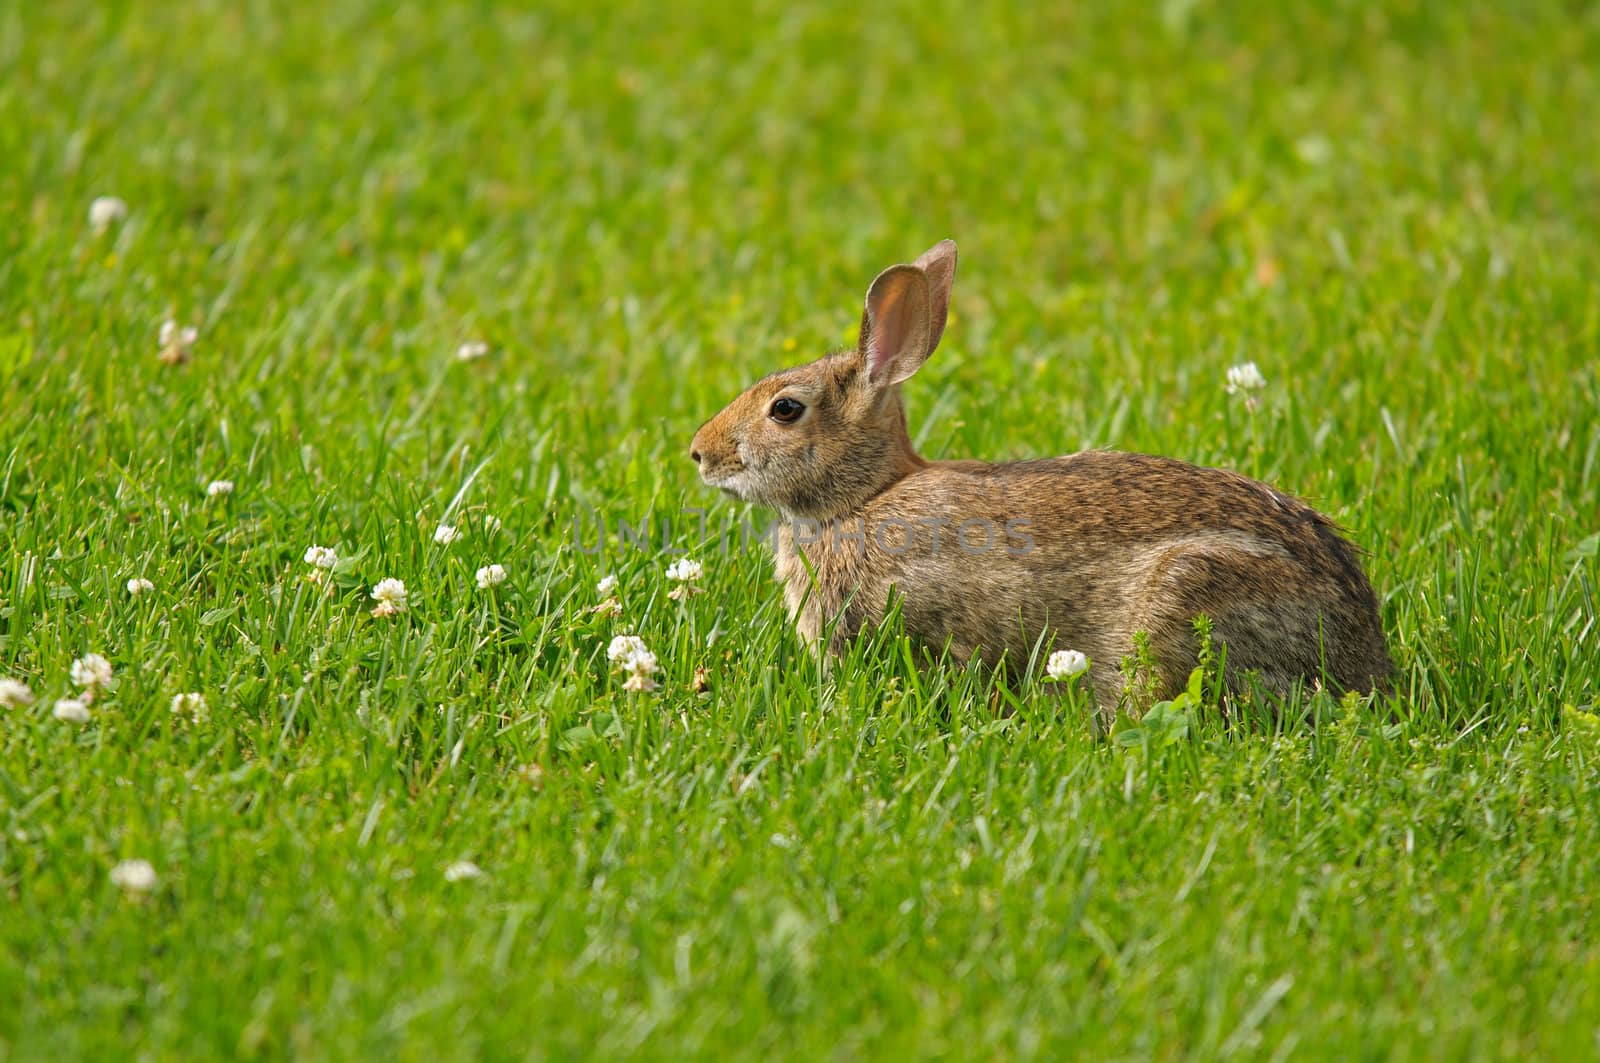 Wild rabbit by Hbak